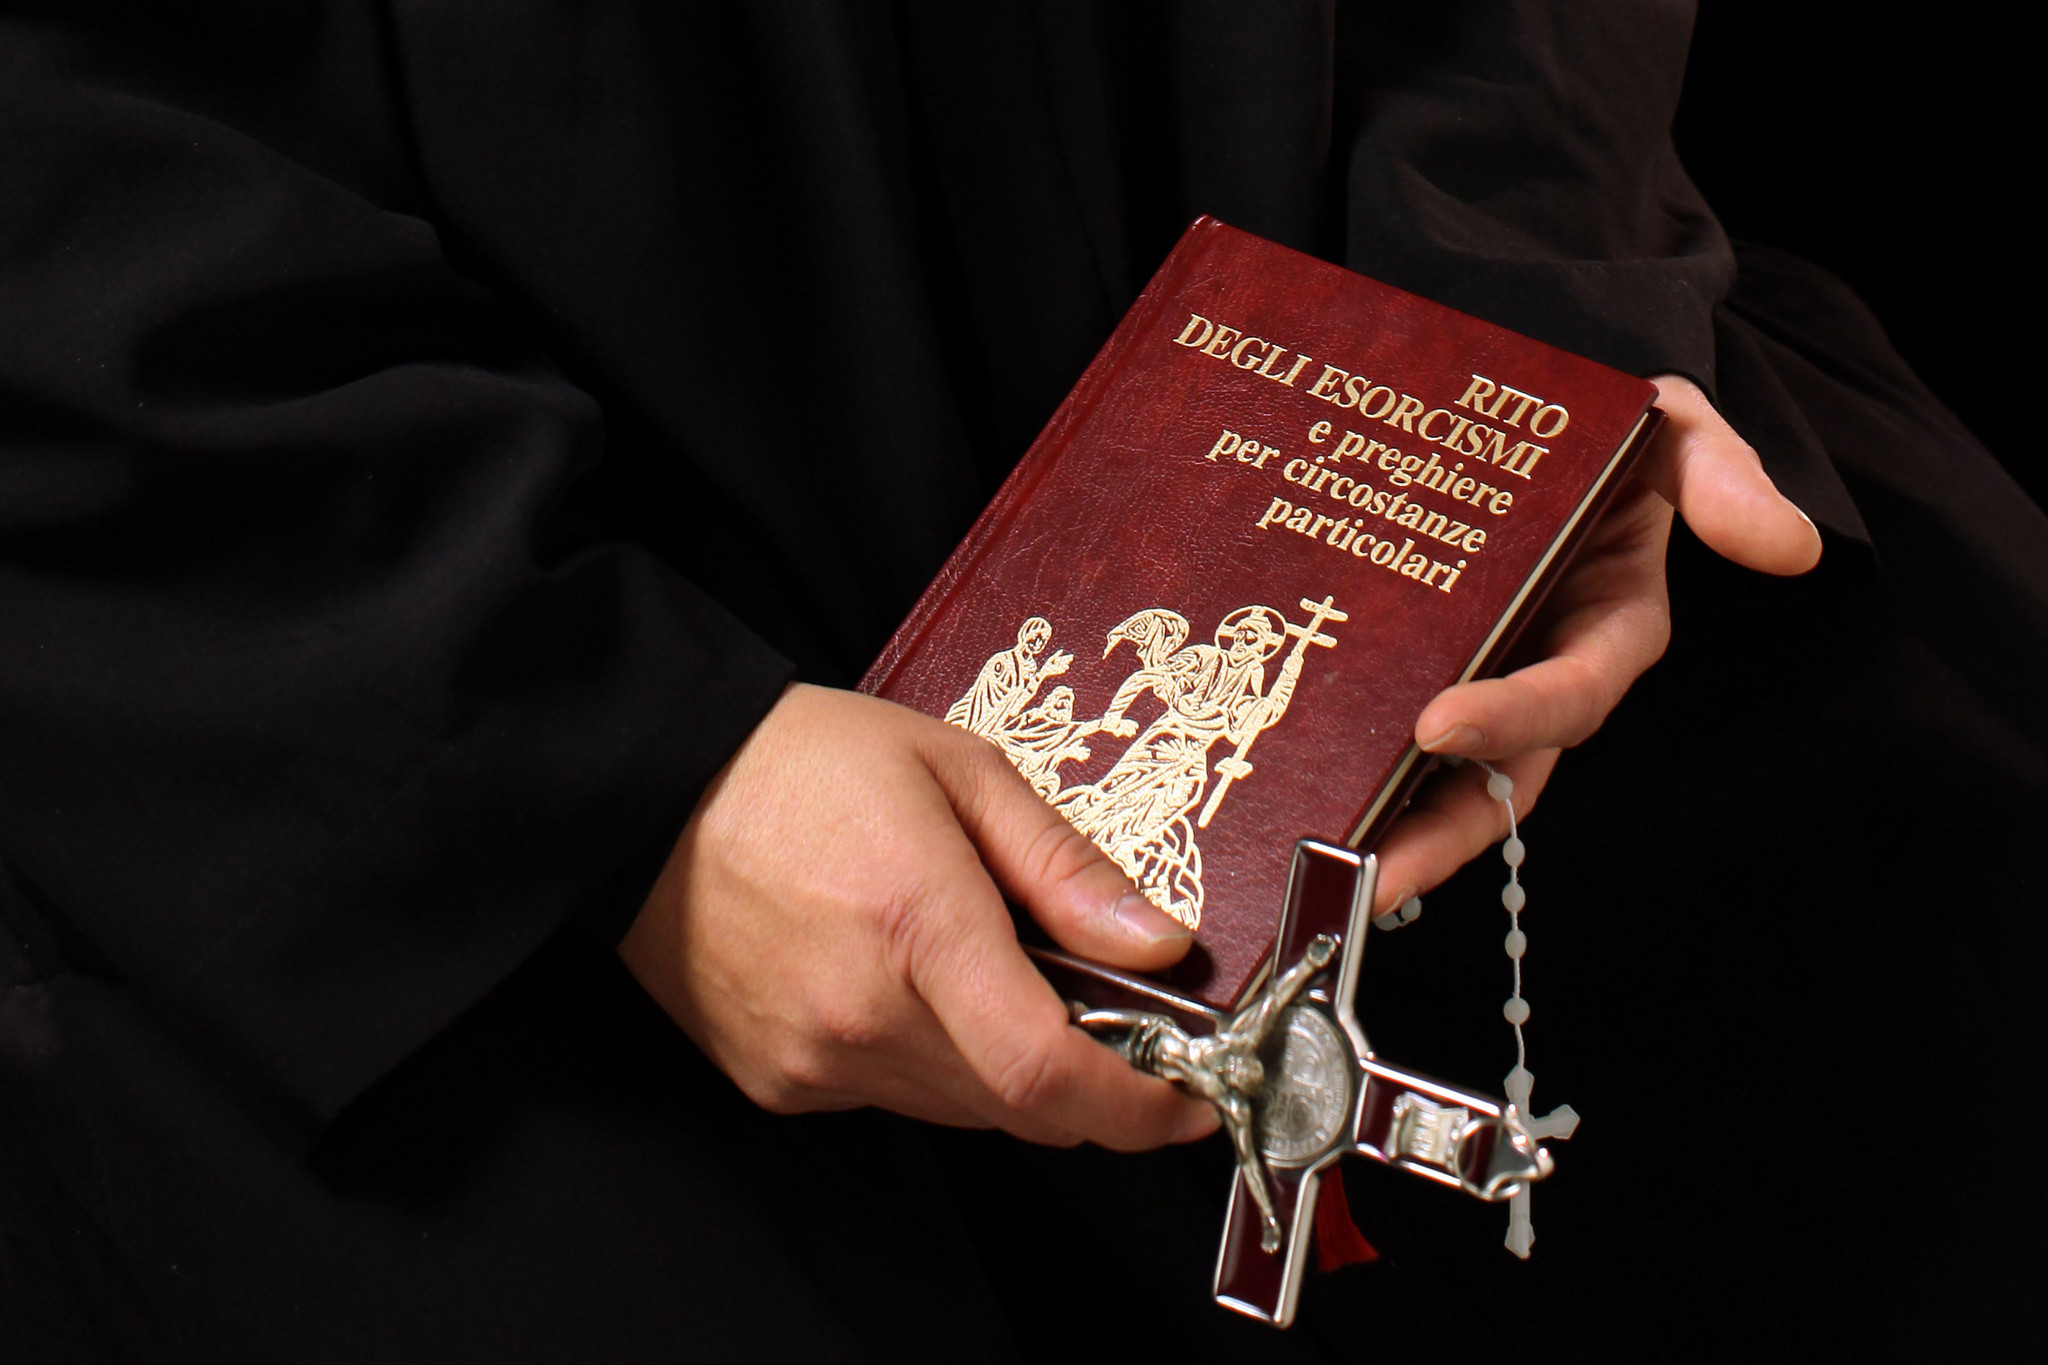 Visão | Nas 21 dioceses portuguesas, só uma tem um padre exorcista